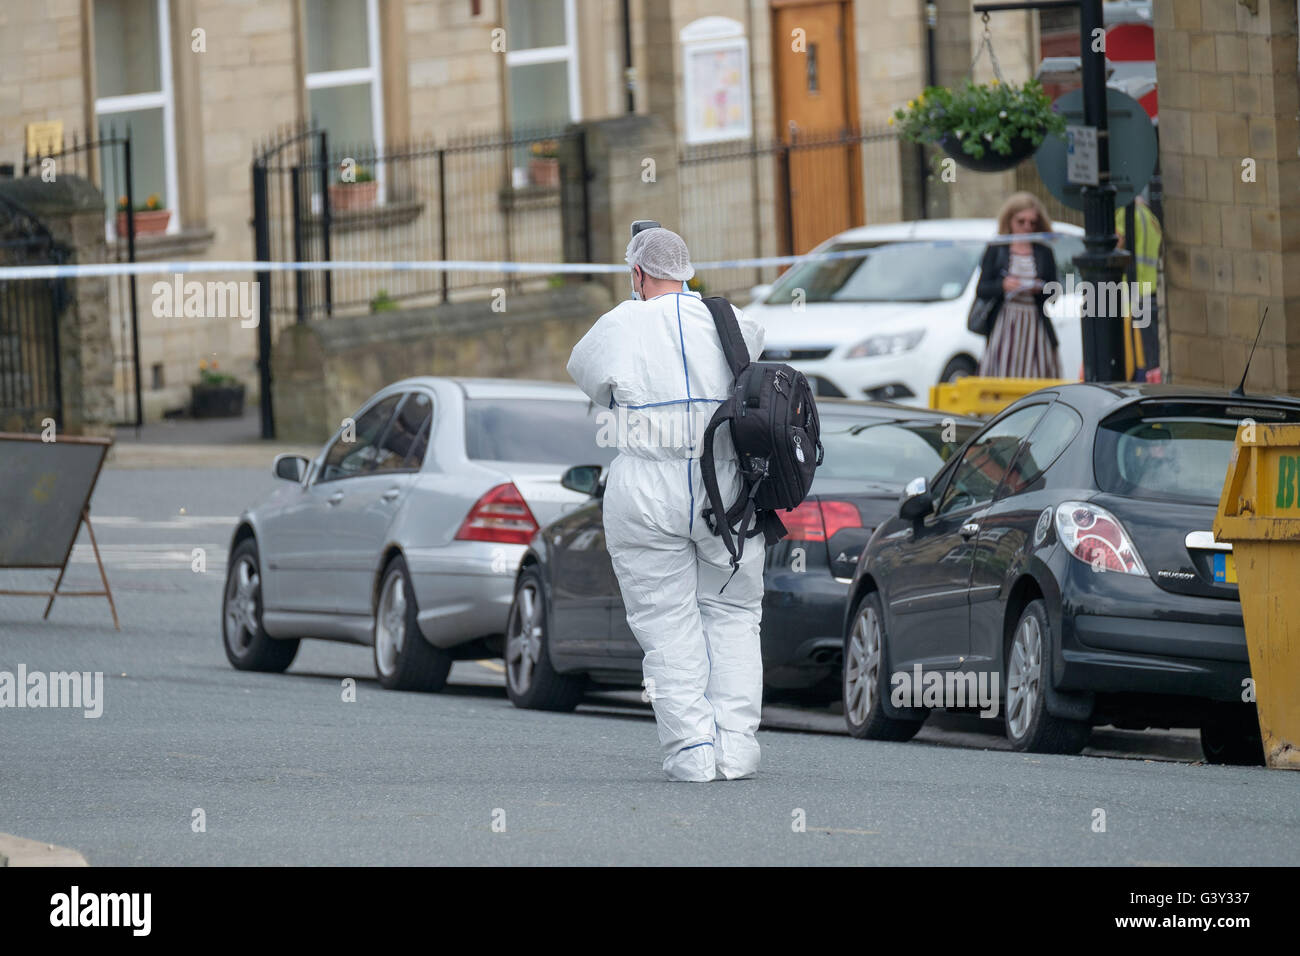 Market Street, Birstall, West Yorkshire, Royaume-Uni. 16 Juin, 2016. Une scène de crime dans la région de Chapel Lane, à une courte distance de la scène de la fusillade. Crédit : Ian Wray Alamy Live News Banque D'Images